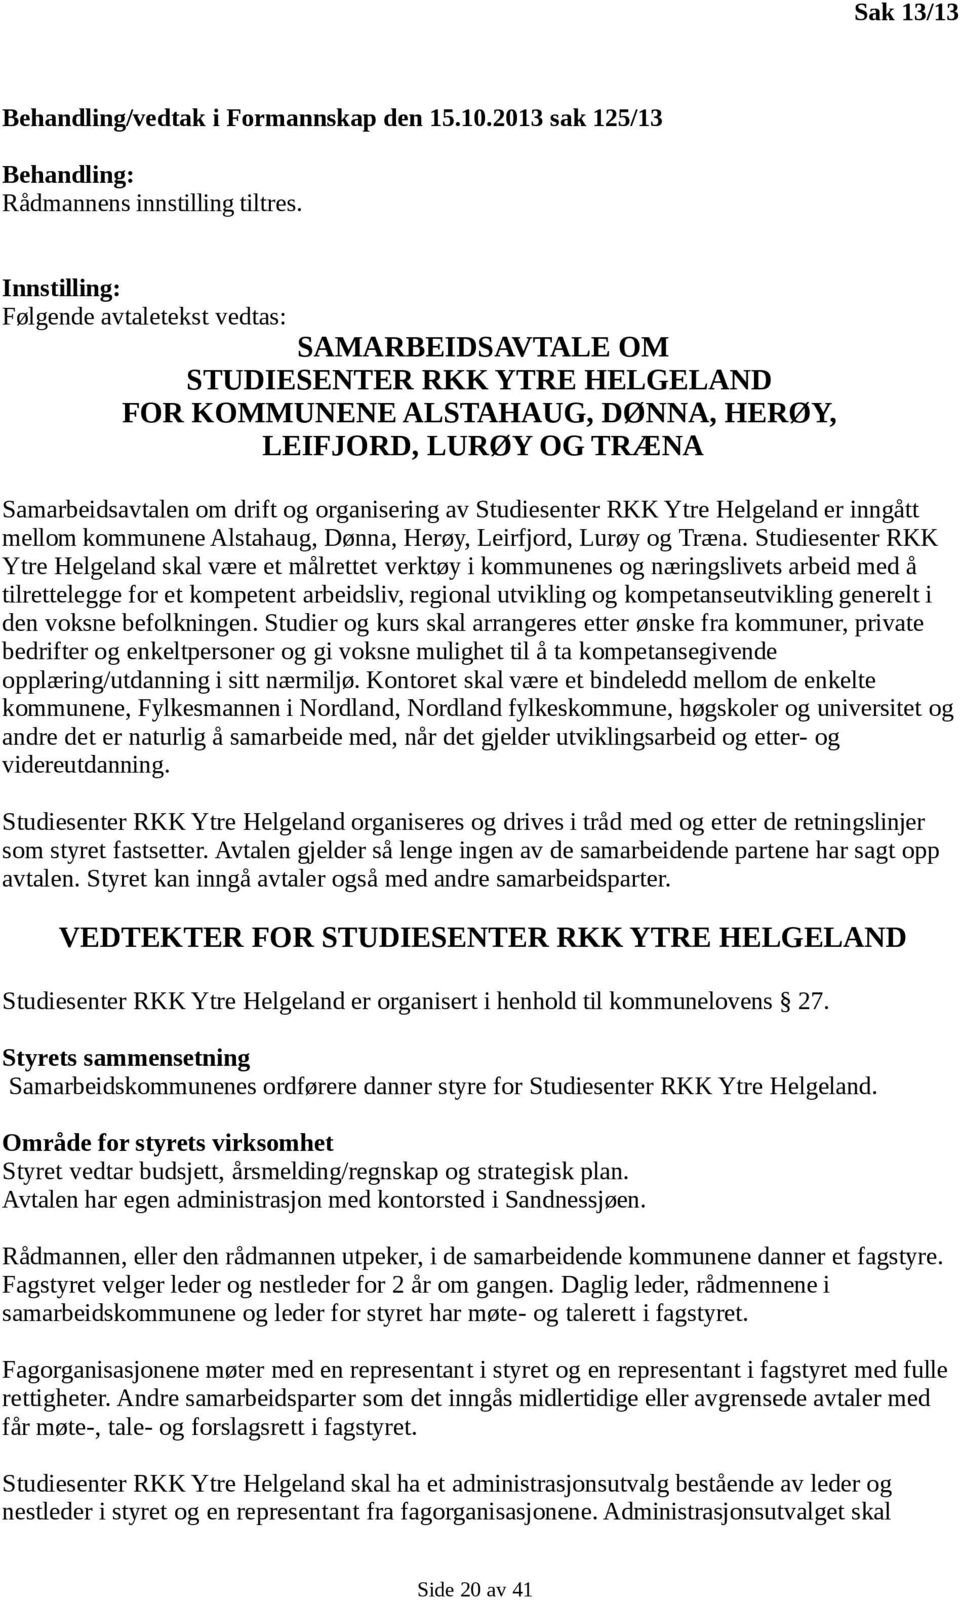 organisering av Studiesenter RKK Ytre Helgeland er inngått mellom kommunene Alstahaug, Dønna, Herøy, Leirfjord, Lurøy og Træna.